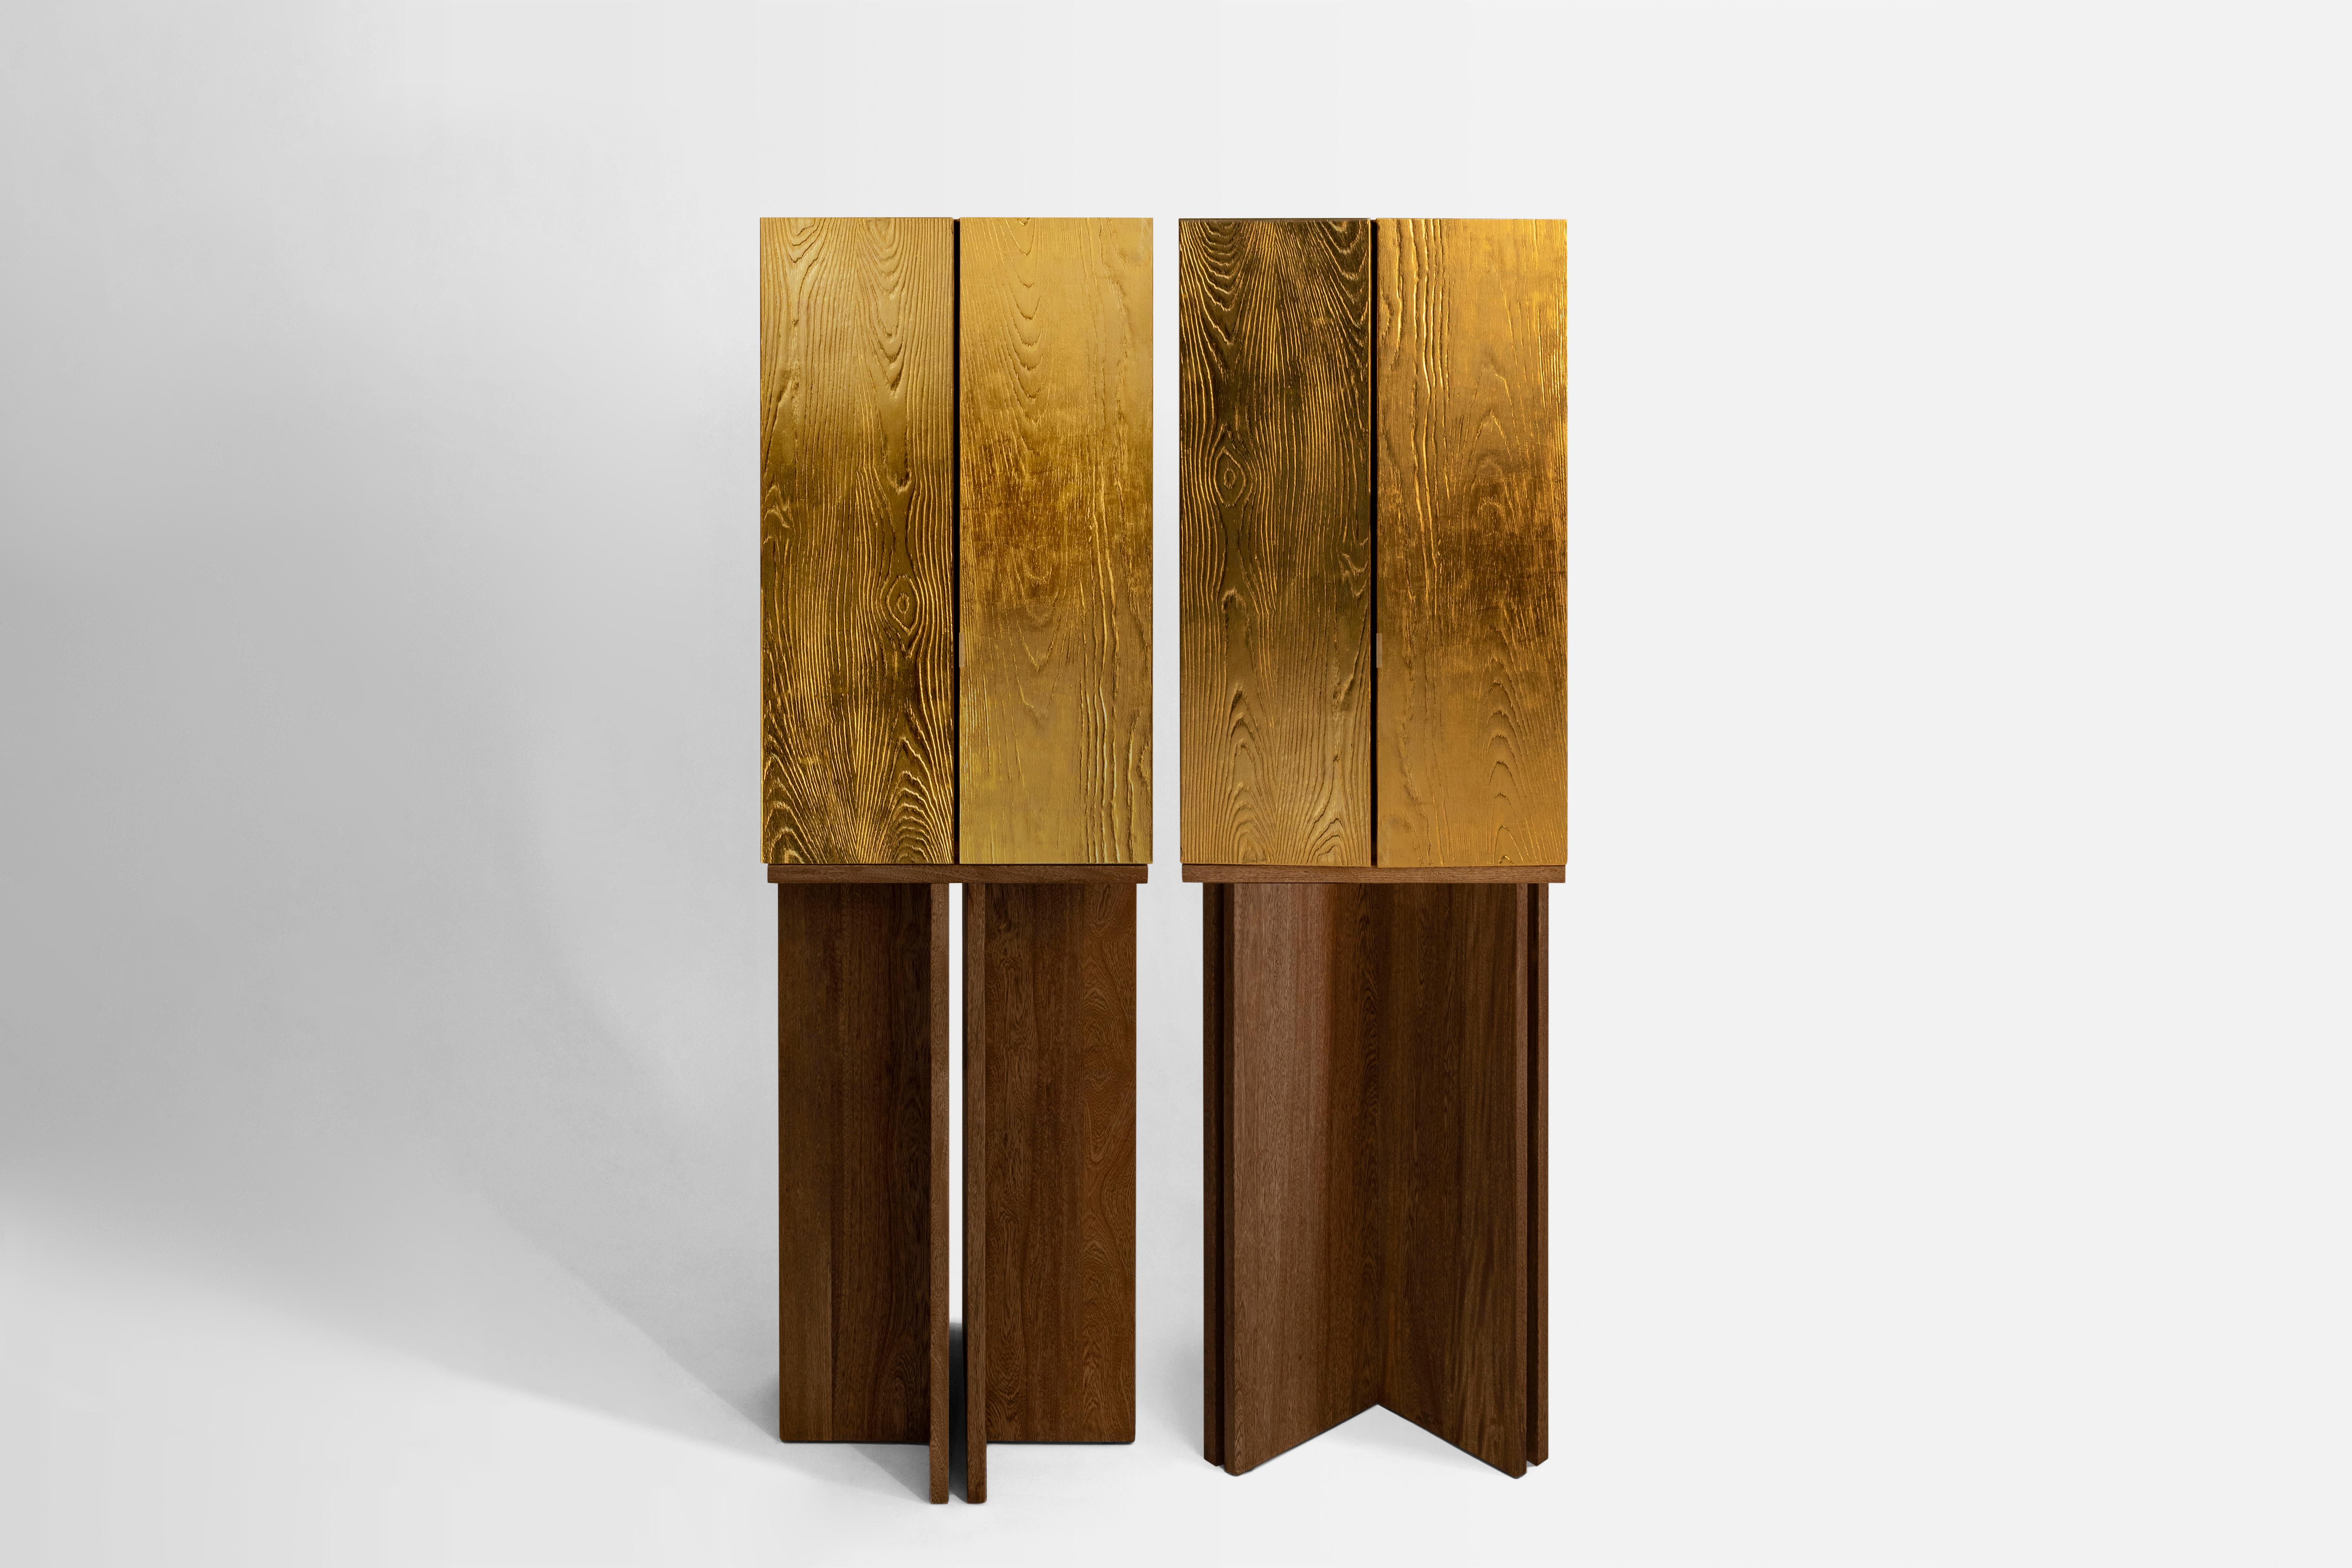 Les architectes Karla Vázquez de KV et Caterina Moretti de Peca ont collaboré pour créer The Aurum Cabinets, qui sont des œuvres sculpturales et des pièces uniques visant à ouvrir des dialogues honnêtes sur les objets les plus proches de